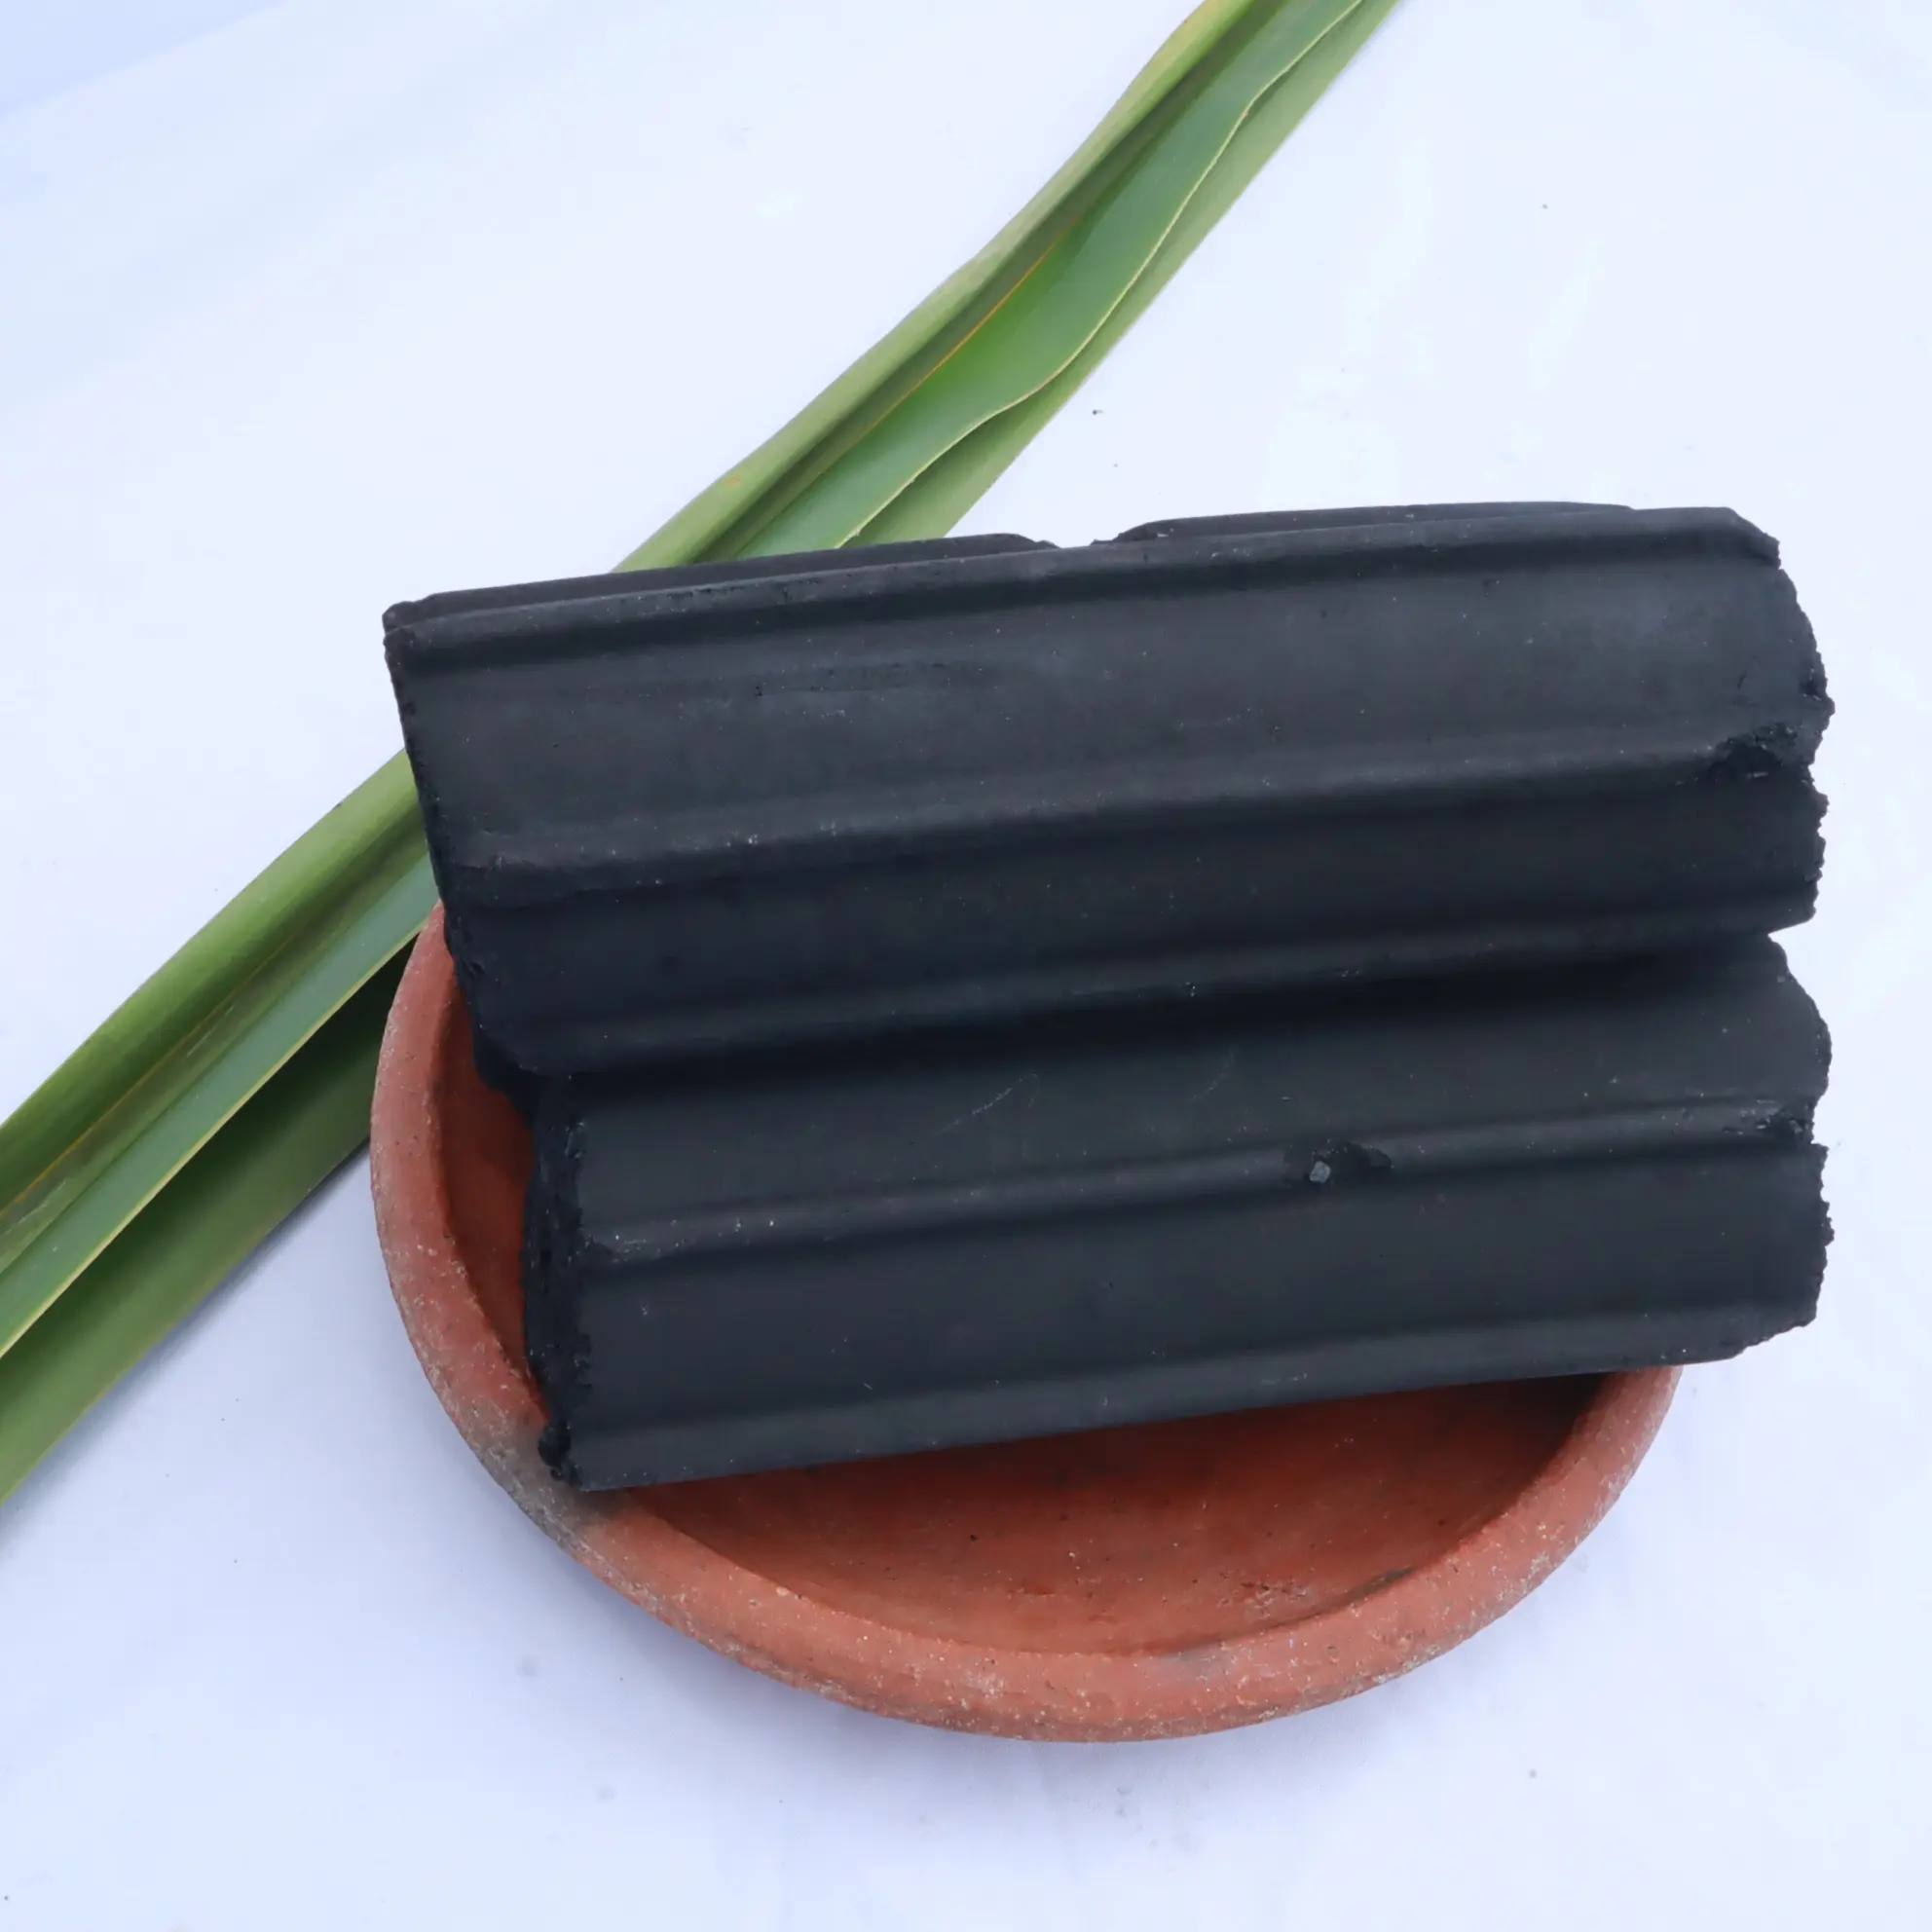 バーベキューグリル用の熟したココナッツシェルカーボンから作られた適切な取り扱いで100% 安全な効率的なパッキングチャコールブリケット